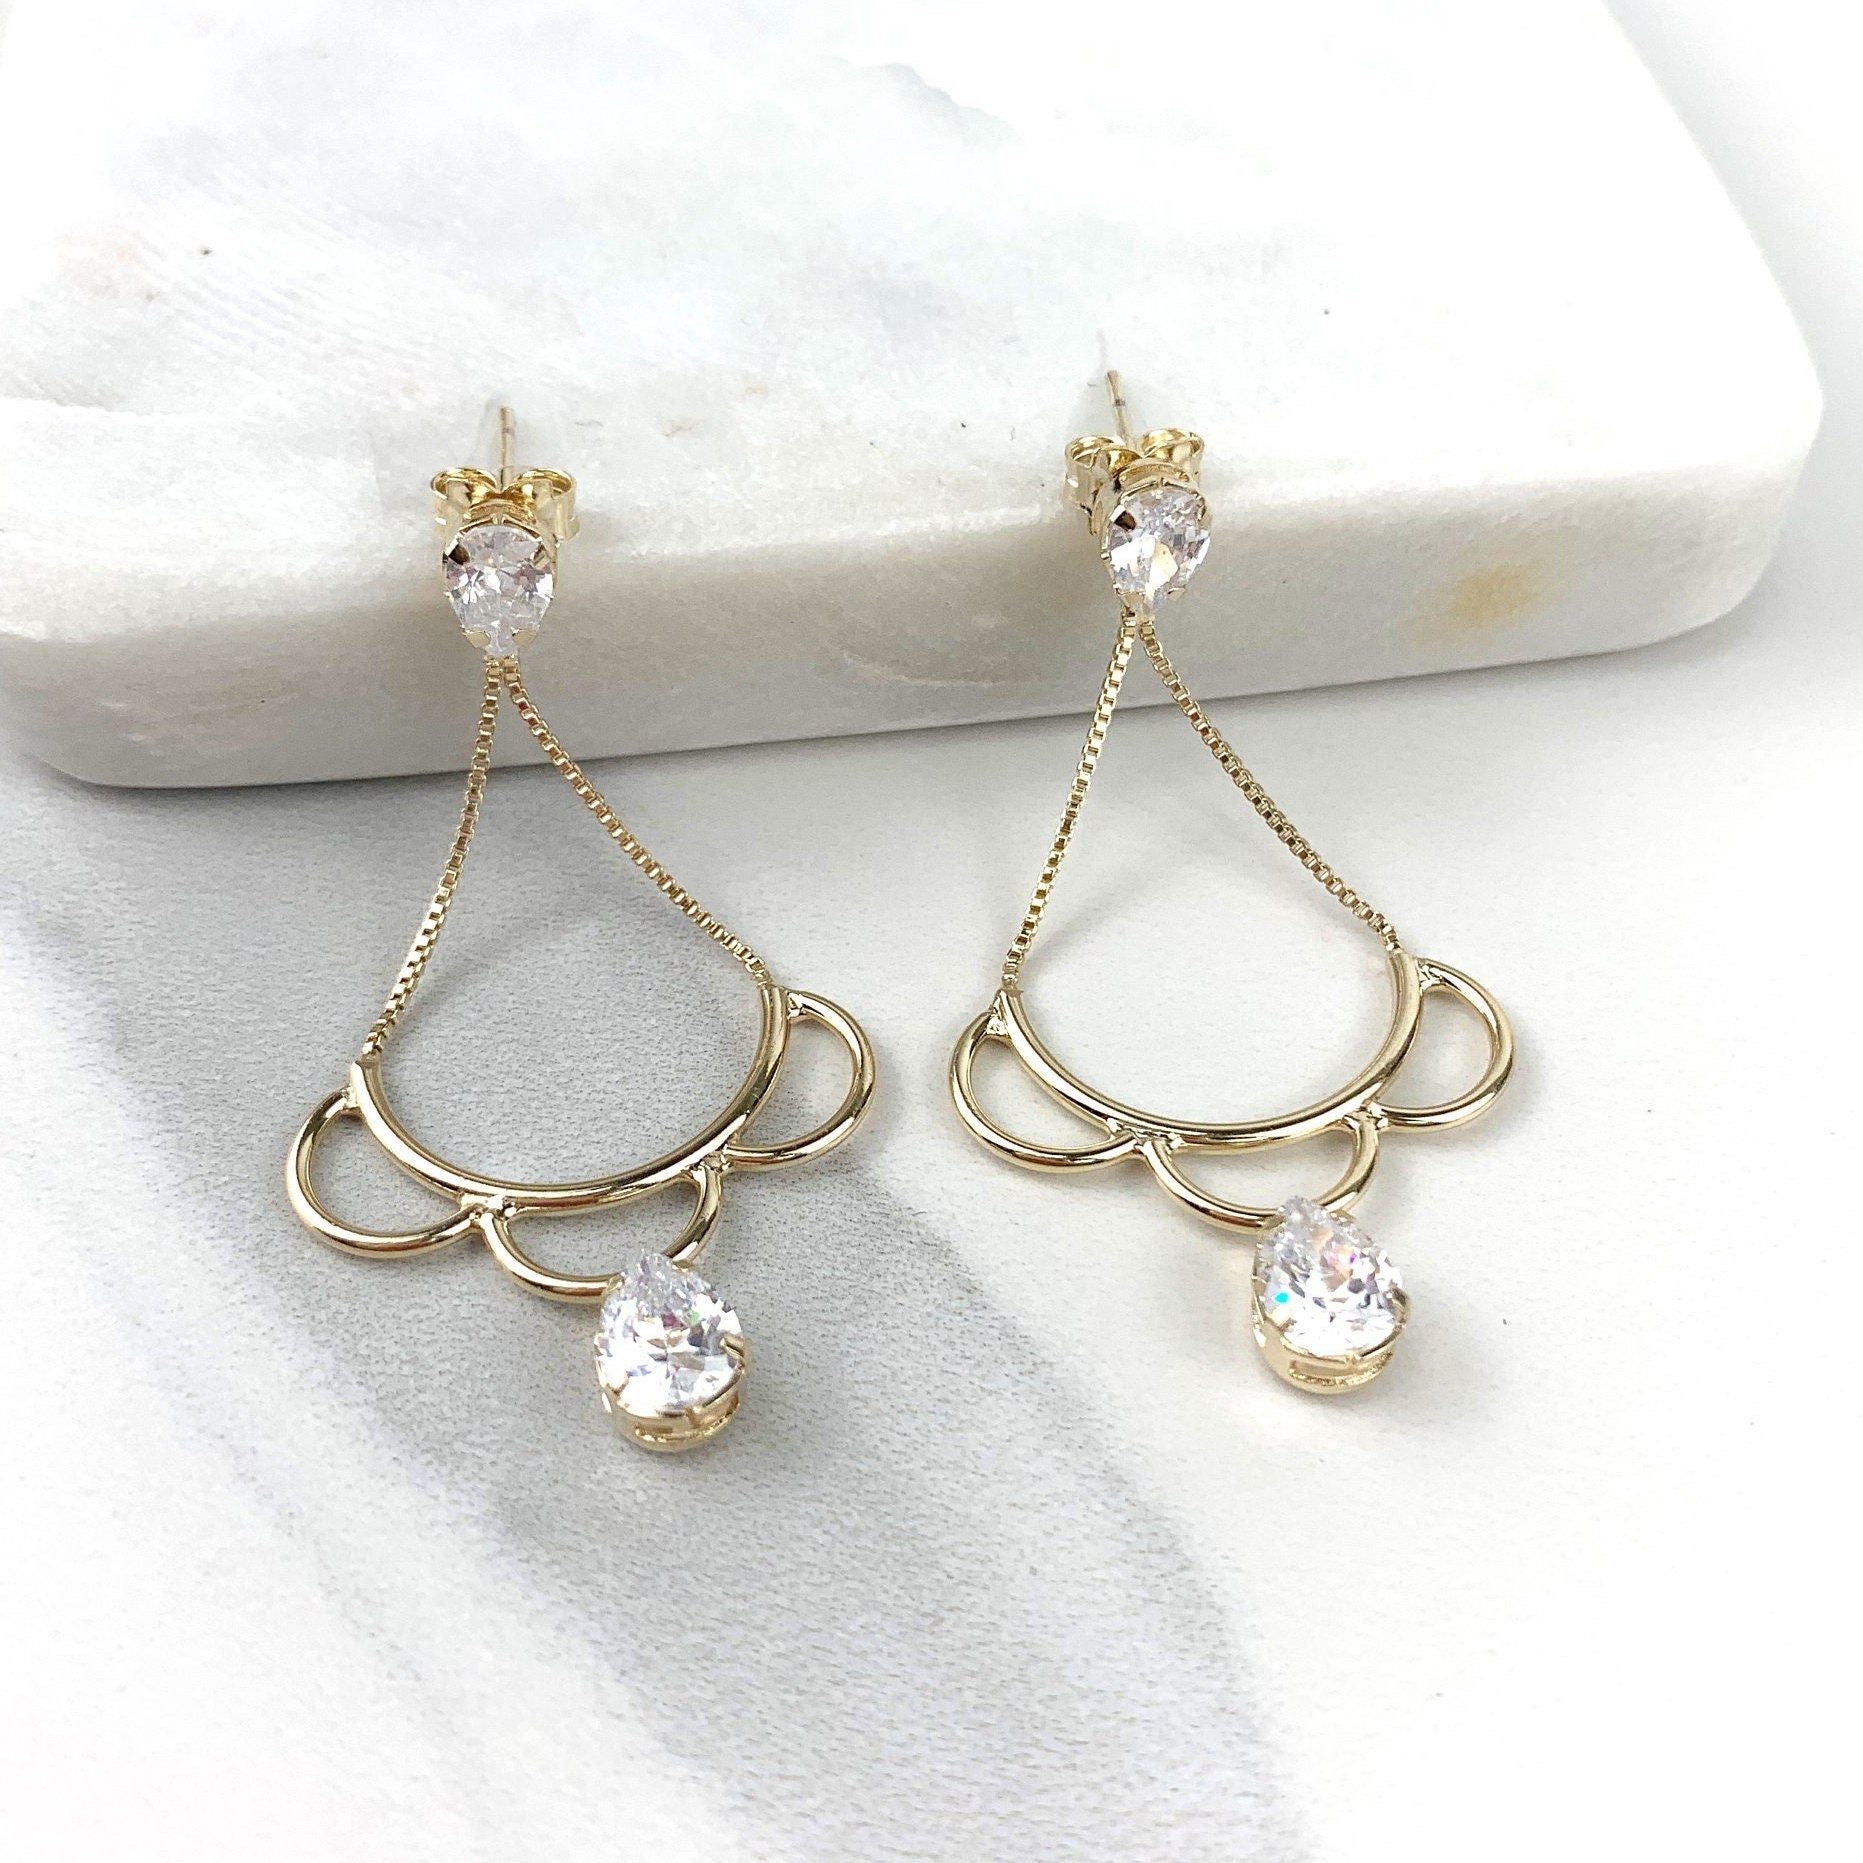 18k Gold Filled Clear Cubic Zirconia Details Cutout Teardrop Shape Drop Dangle Earrings, Wholesale Jewelry Making Supplies